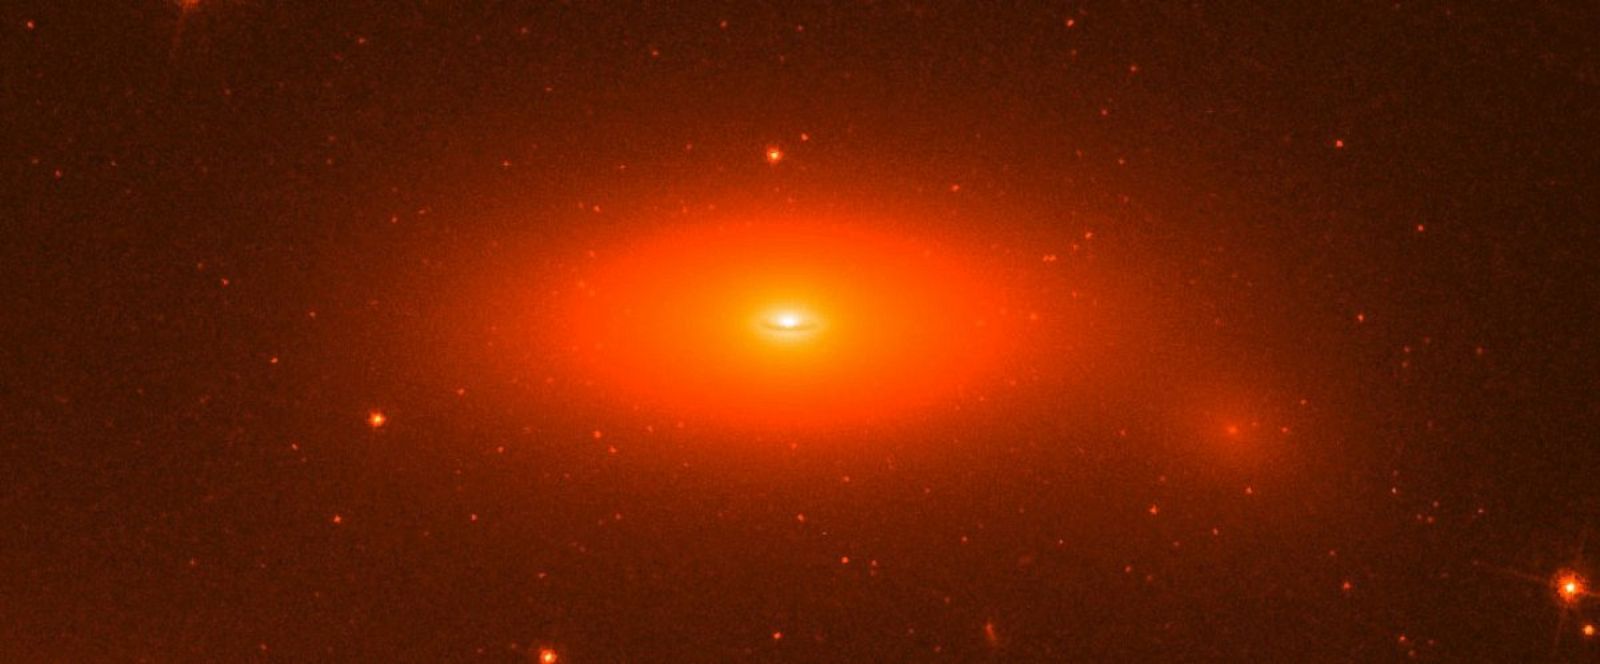 علماء الفلك قد درس الجار الميت من مجرة درب التبانة